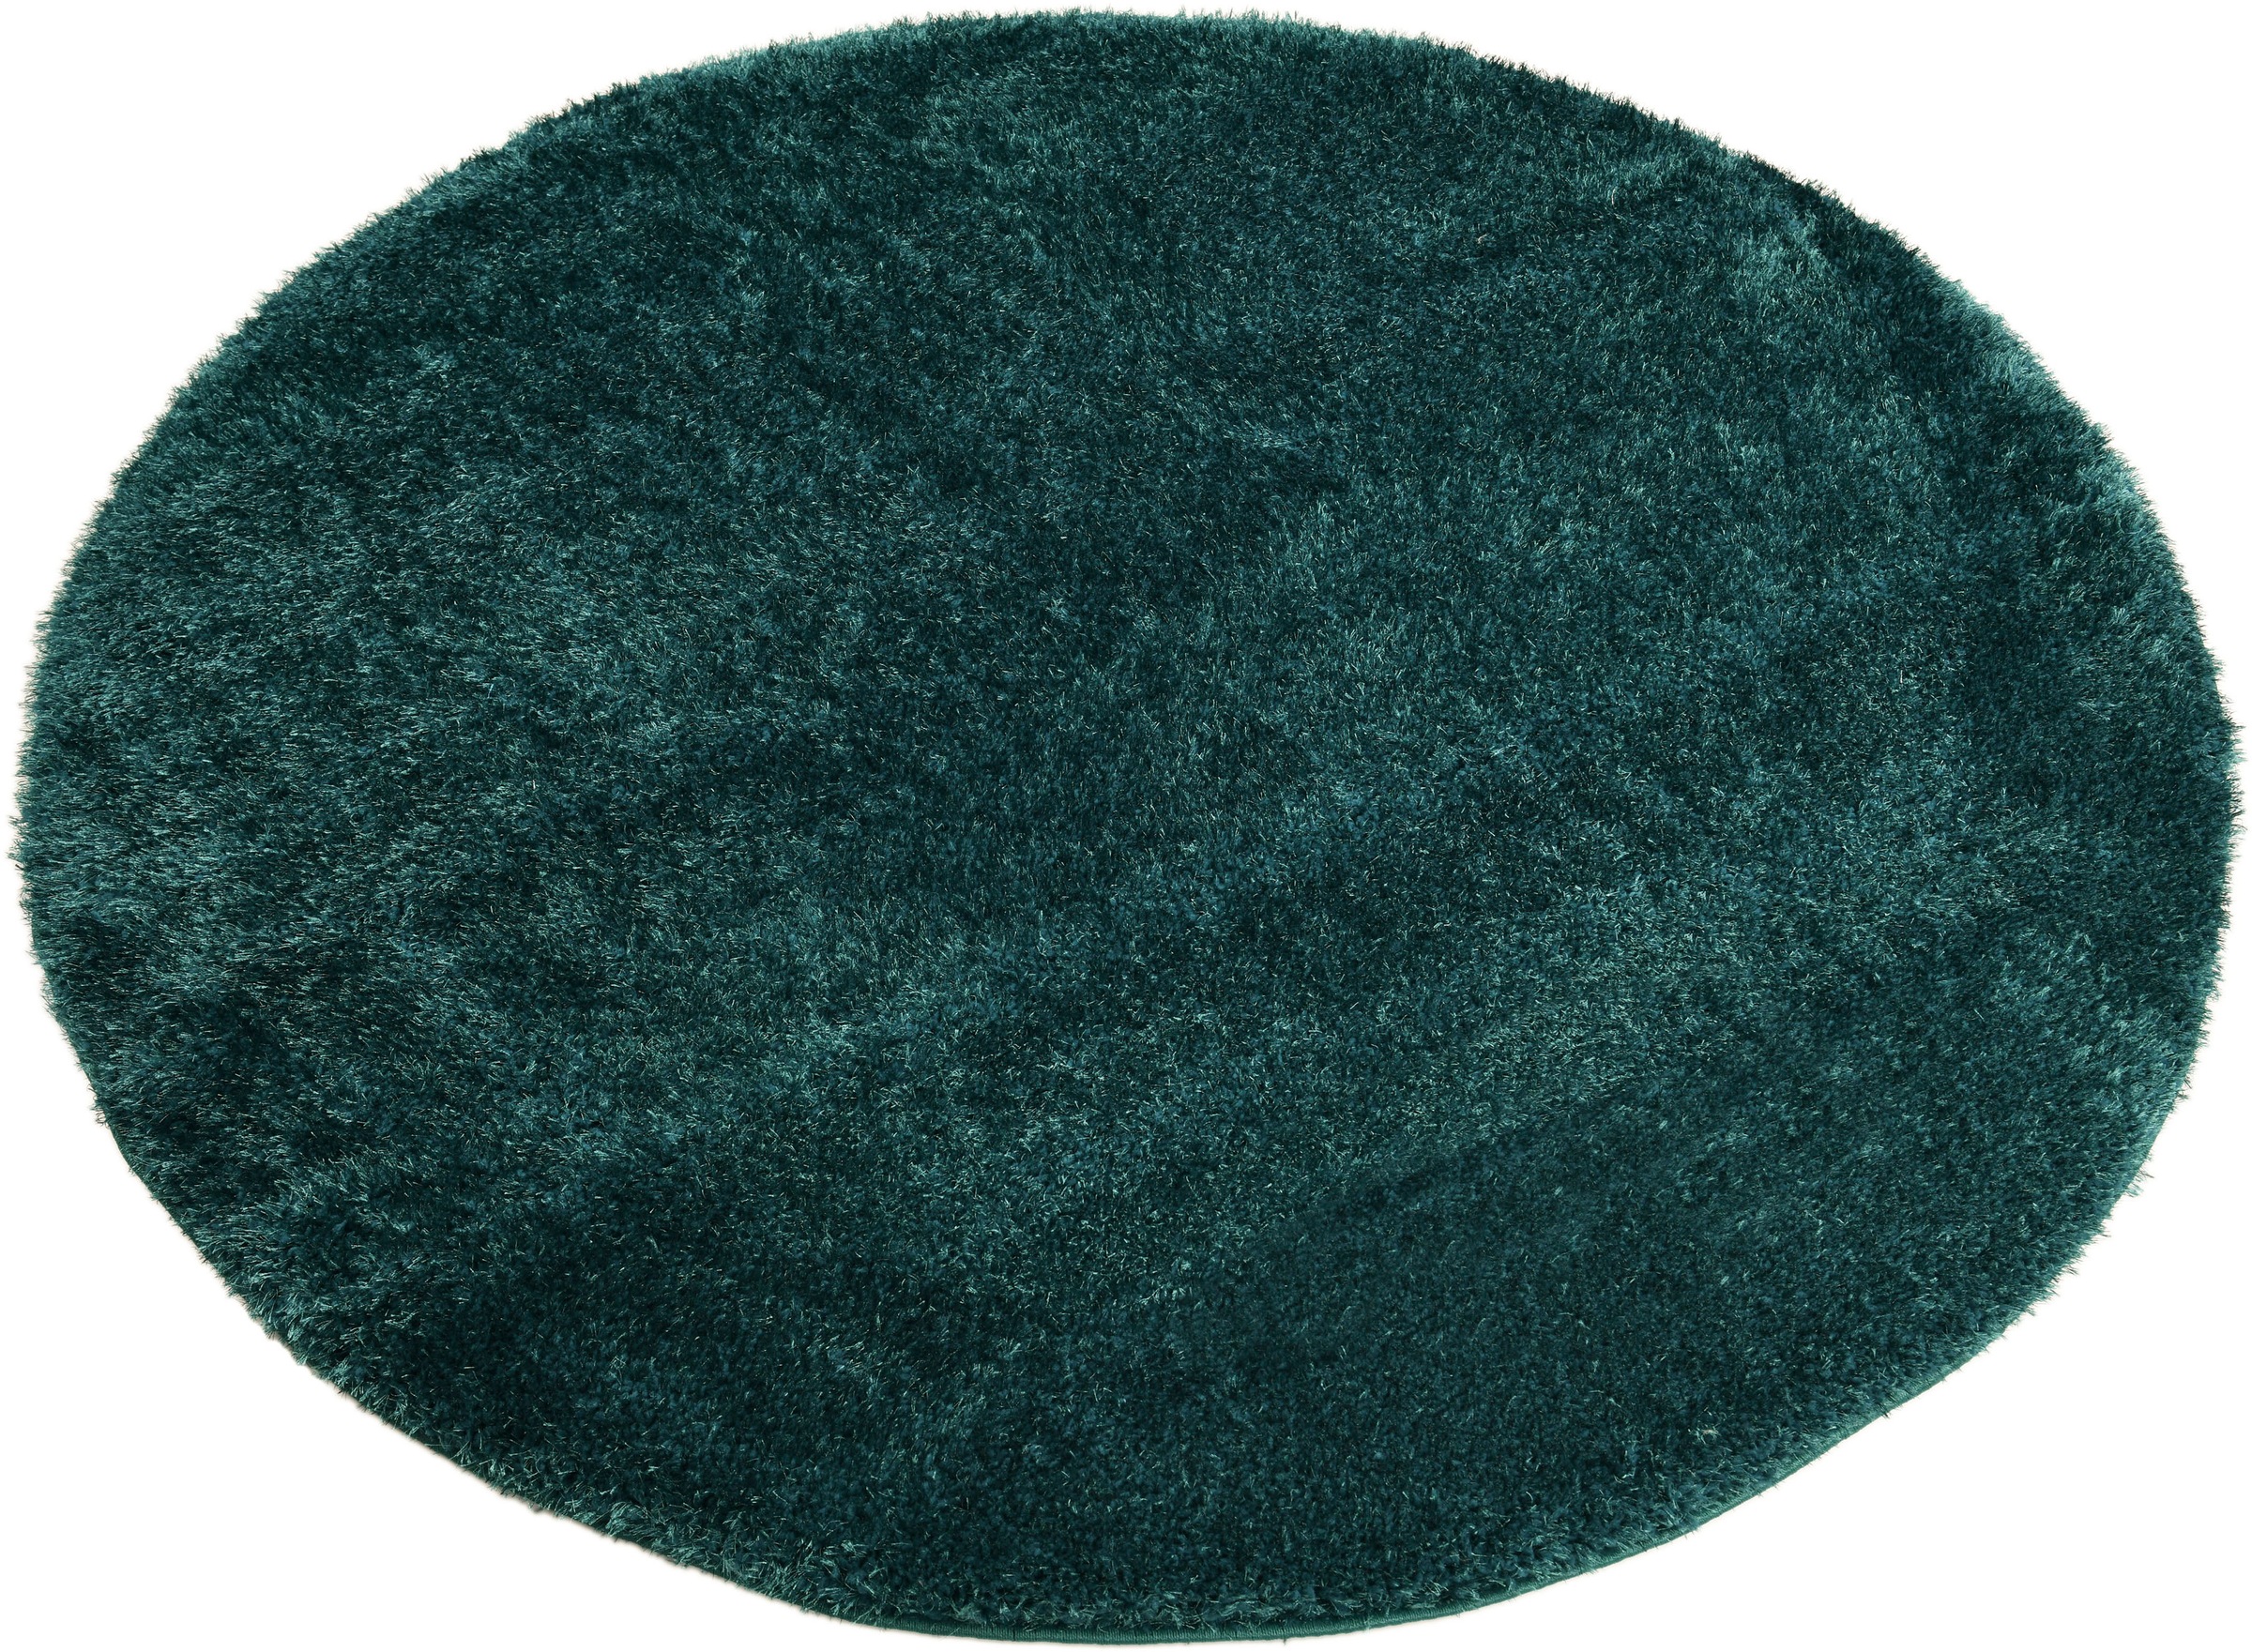 Home affaire Hochflor-Teppich »Malin«, rund, Uni-Farben, leicht glänzend, besonders flauschig durch Mikrofaser